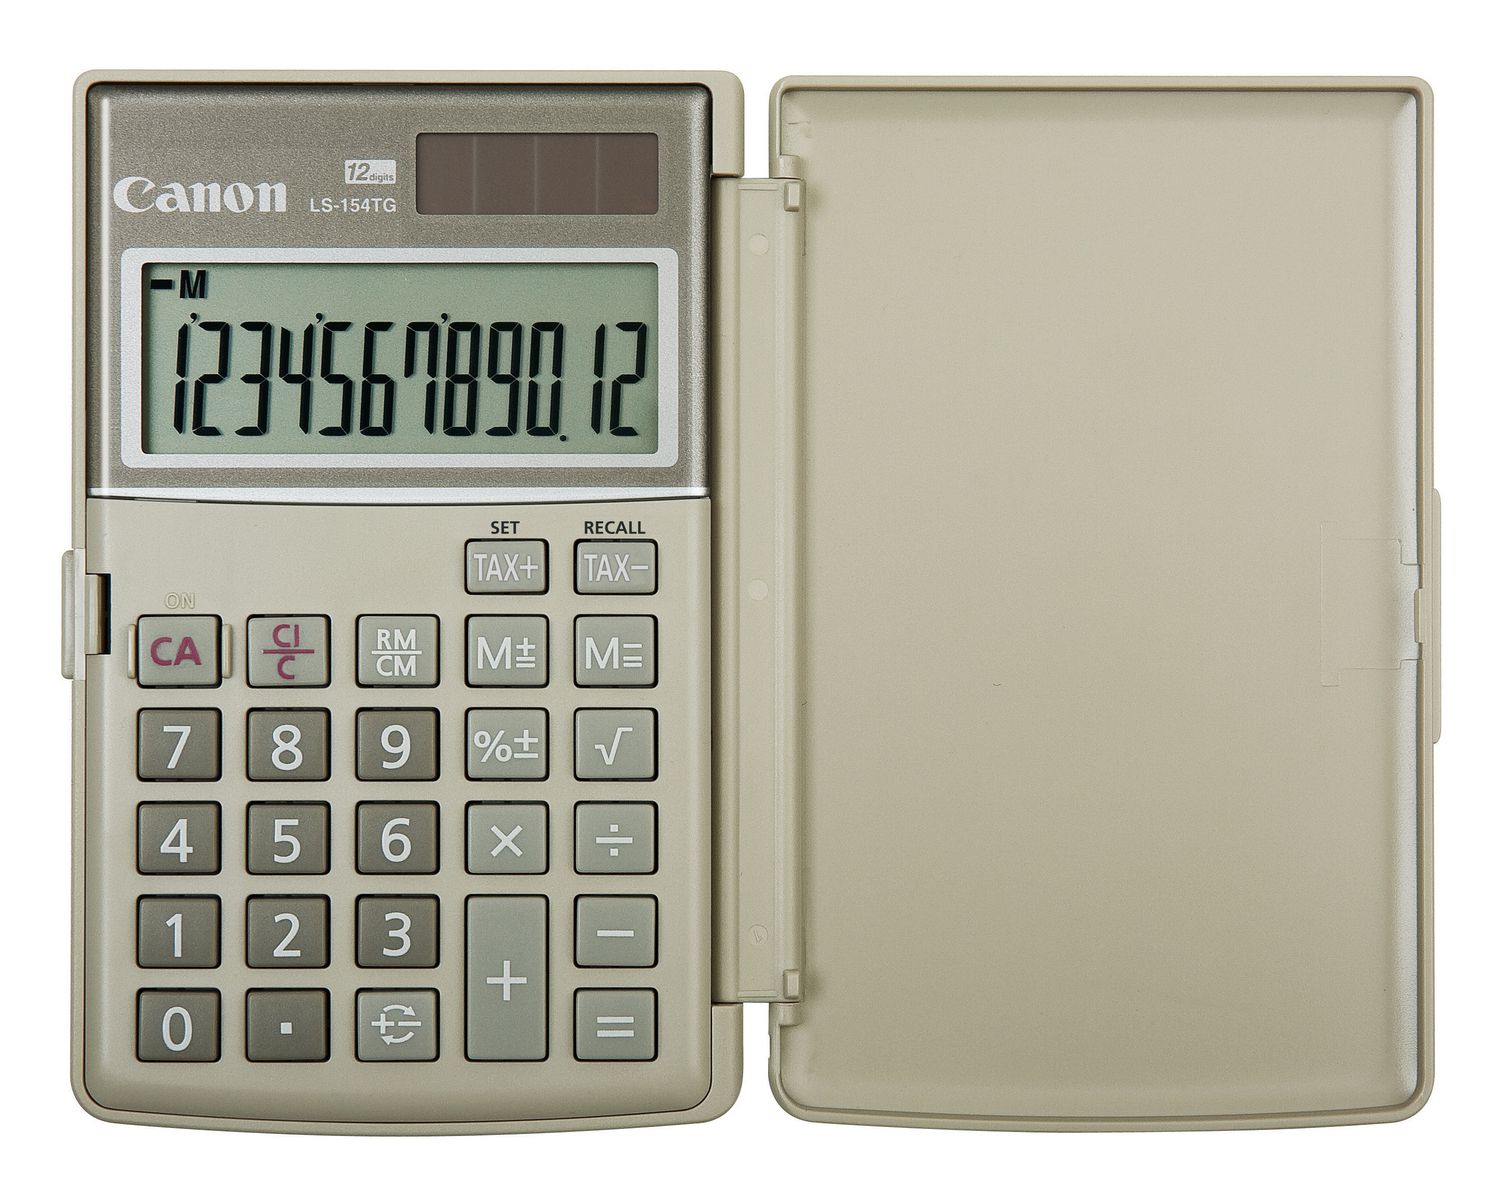 Calculatrice financière Casio Fc-100v 4 lignes 10+2 chiffres avec couvercle